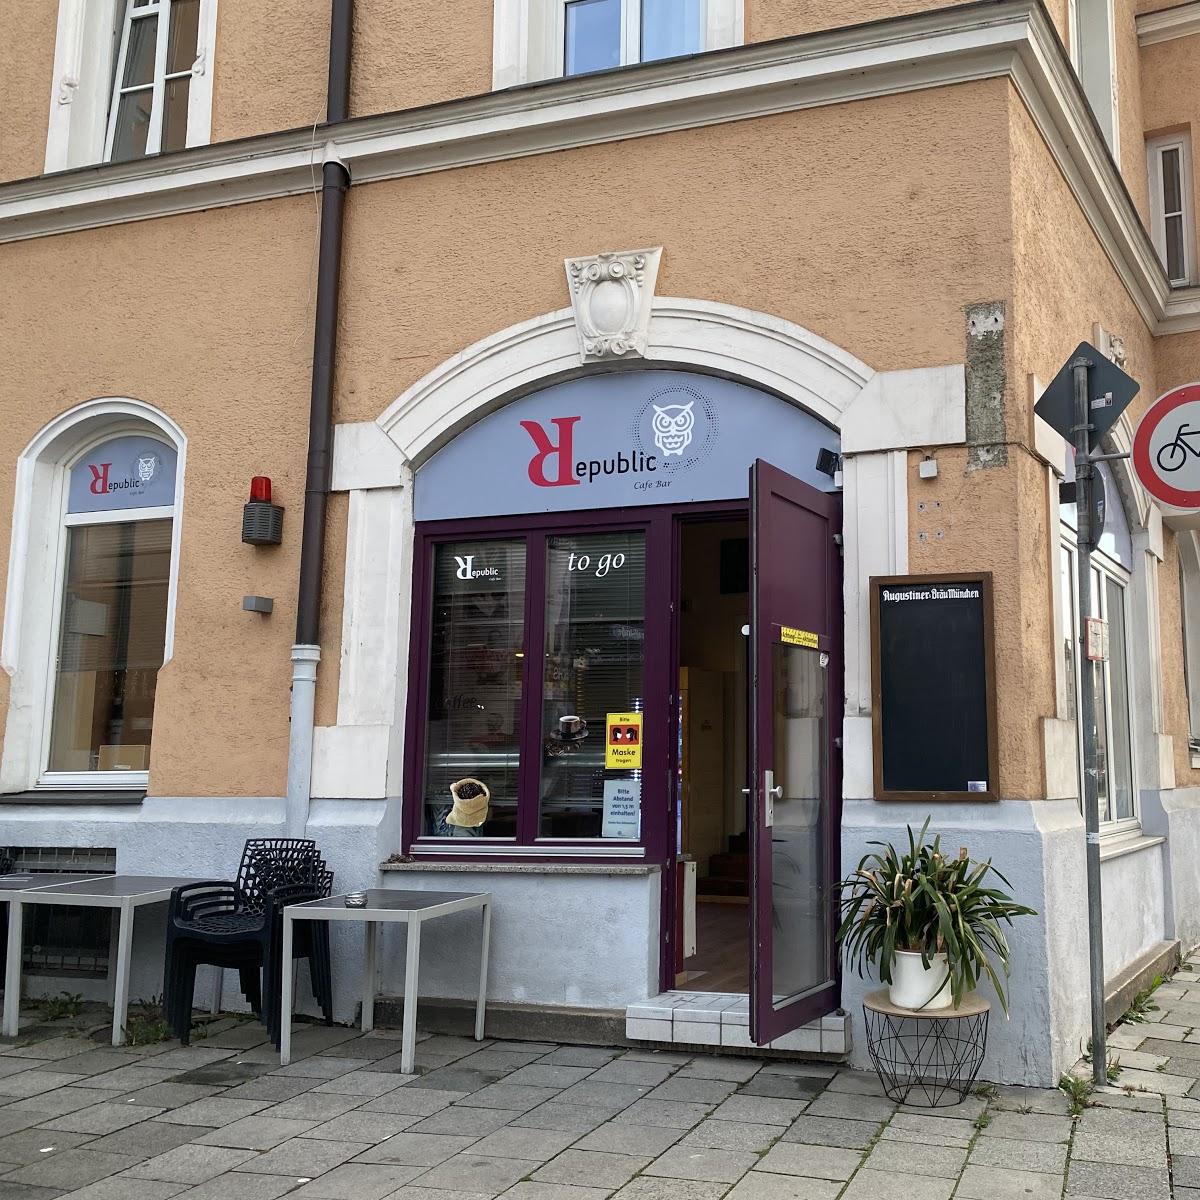 Restaurant "Republic Cafe to go" in München